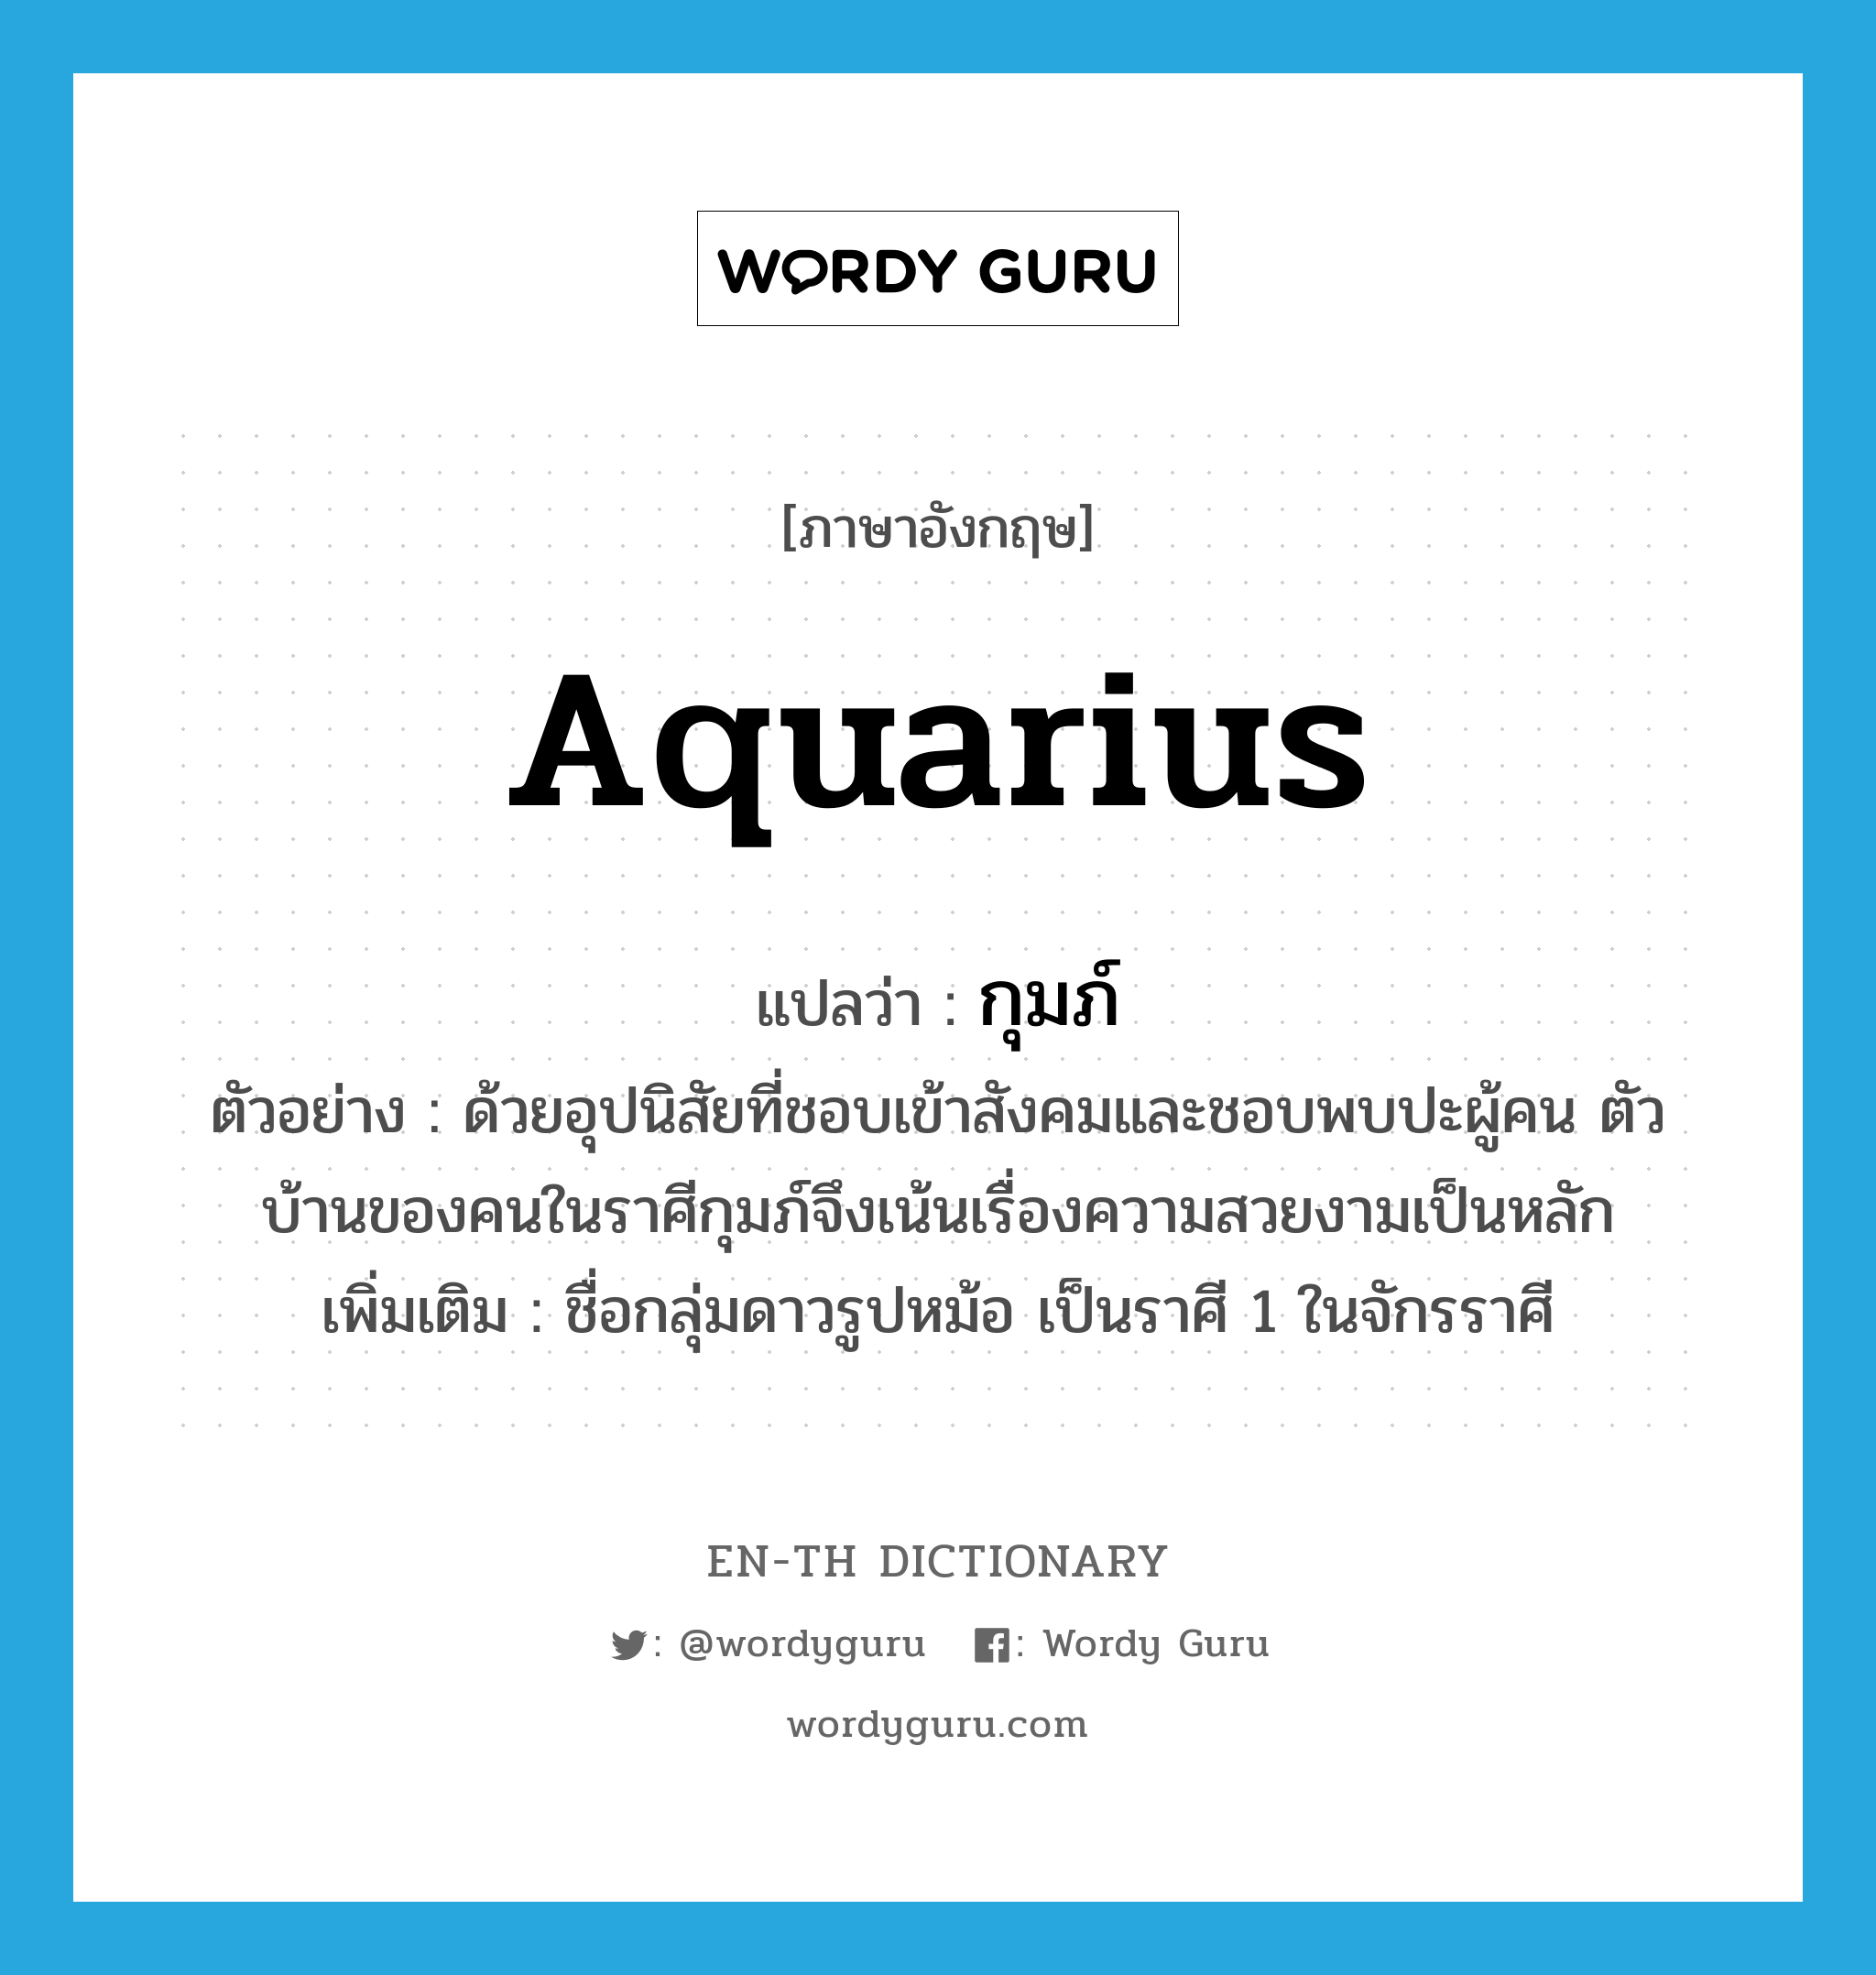 Aquarius แปลว่า?, คำศัพท์ภาษาอังกฤษ Aquarius แปลว่า กุมภ์ ประเภท N ตัวอย่าง ด้วยอุปนิสัยที่ชอบเข้าสังคมและชอบพบปะผู้คน ตัวบ้านของคนในราศีกุมภ์จึงเน้นเรื่องความสวยงามเป็นหลัก เพิ่มเติม ชื่อกลุ่มดาวรูปหม้อ เป็นราศี 1 ในจักรราศี หมวด N